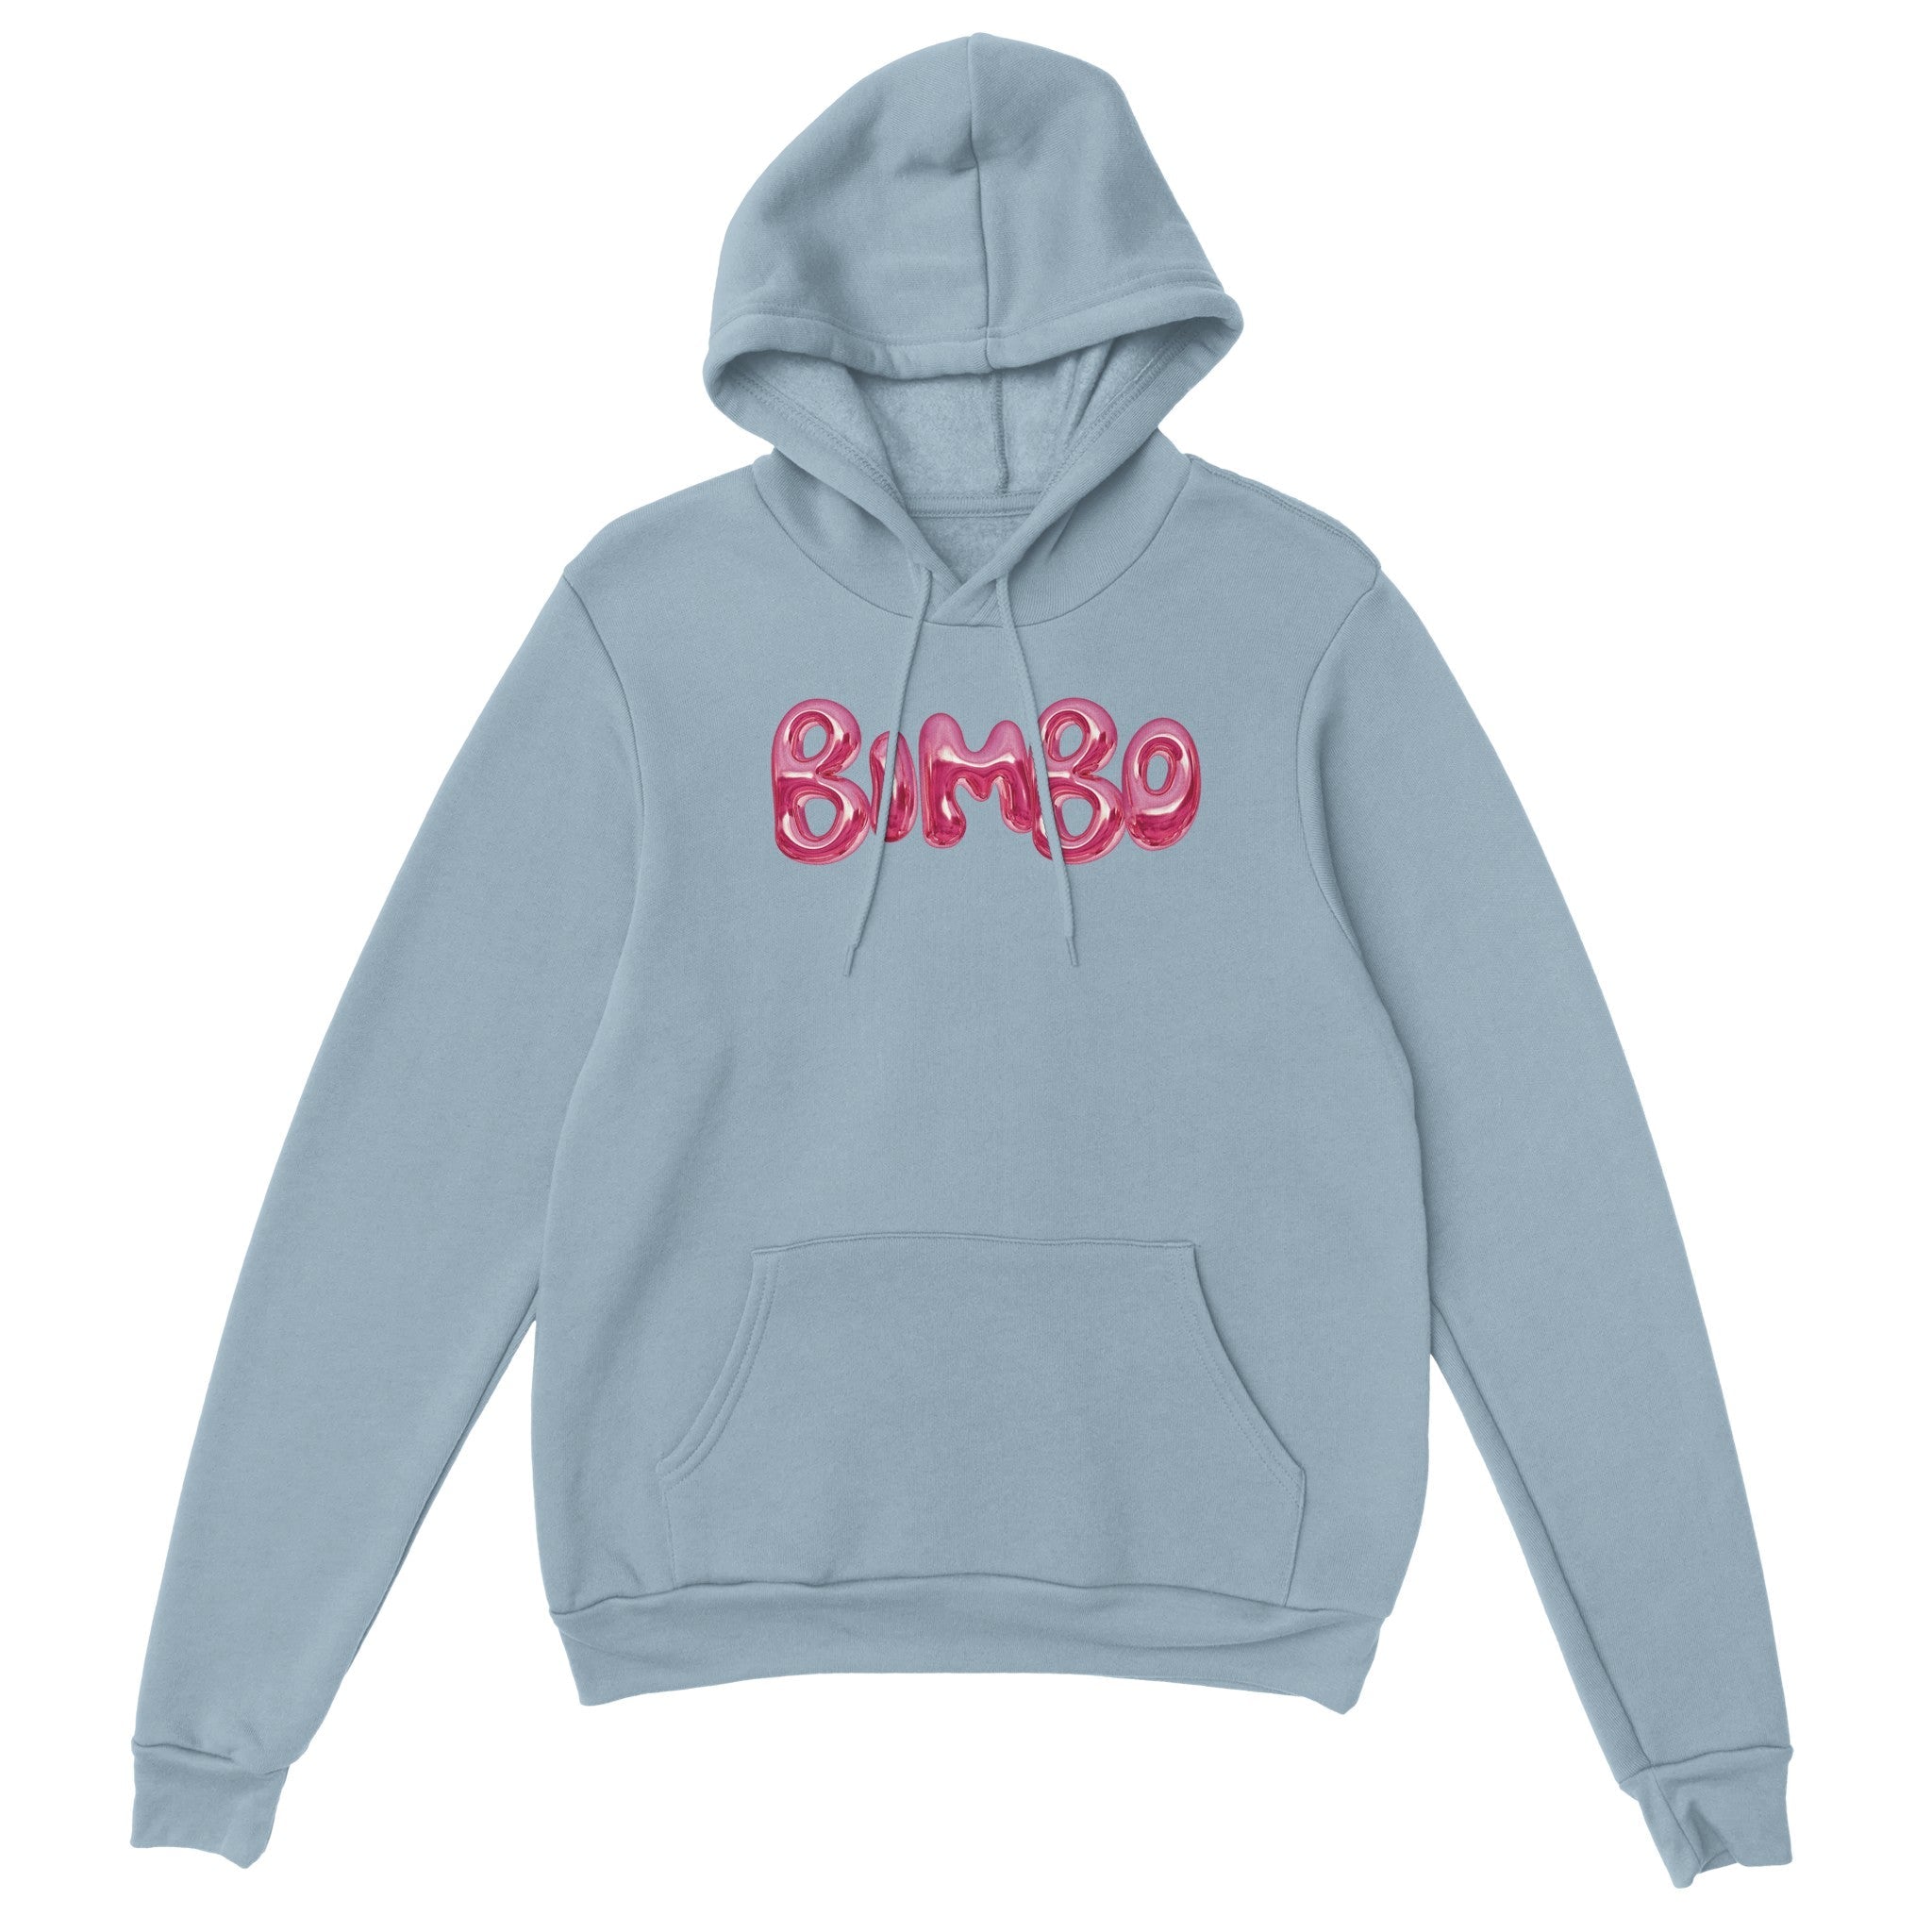 'Bimbo' hoodie - In Print We Trust